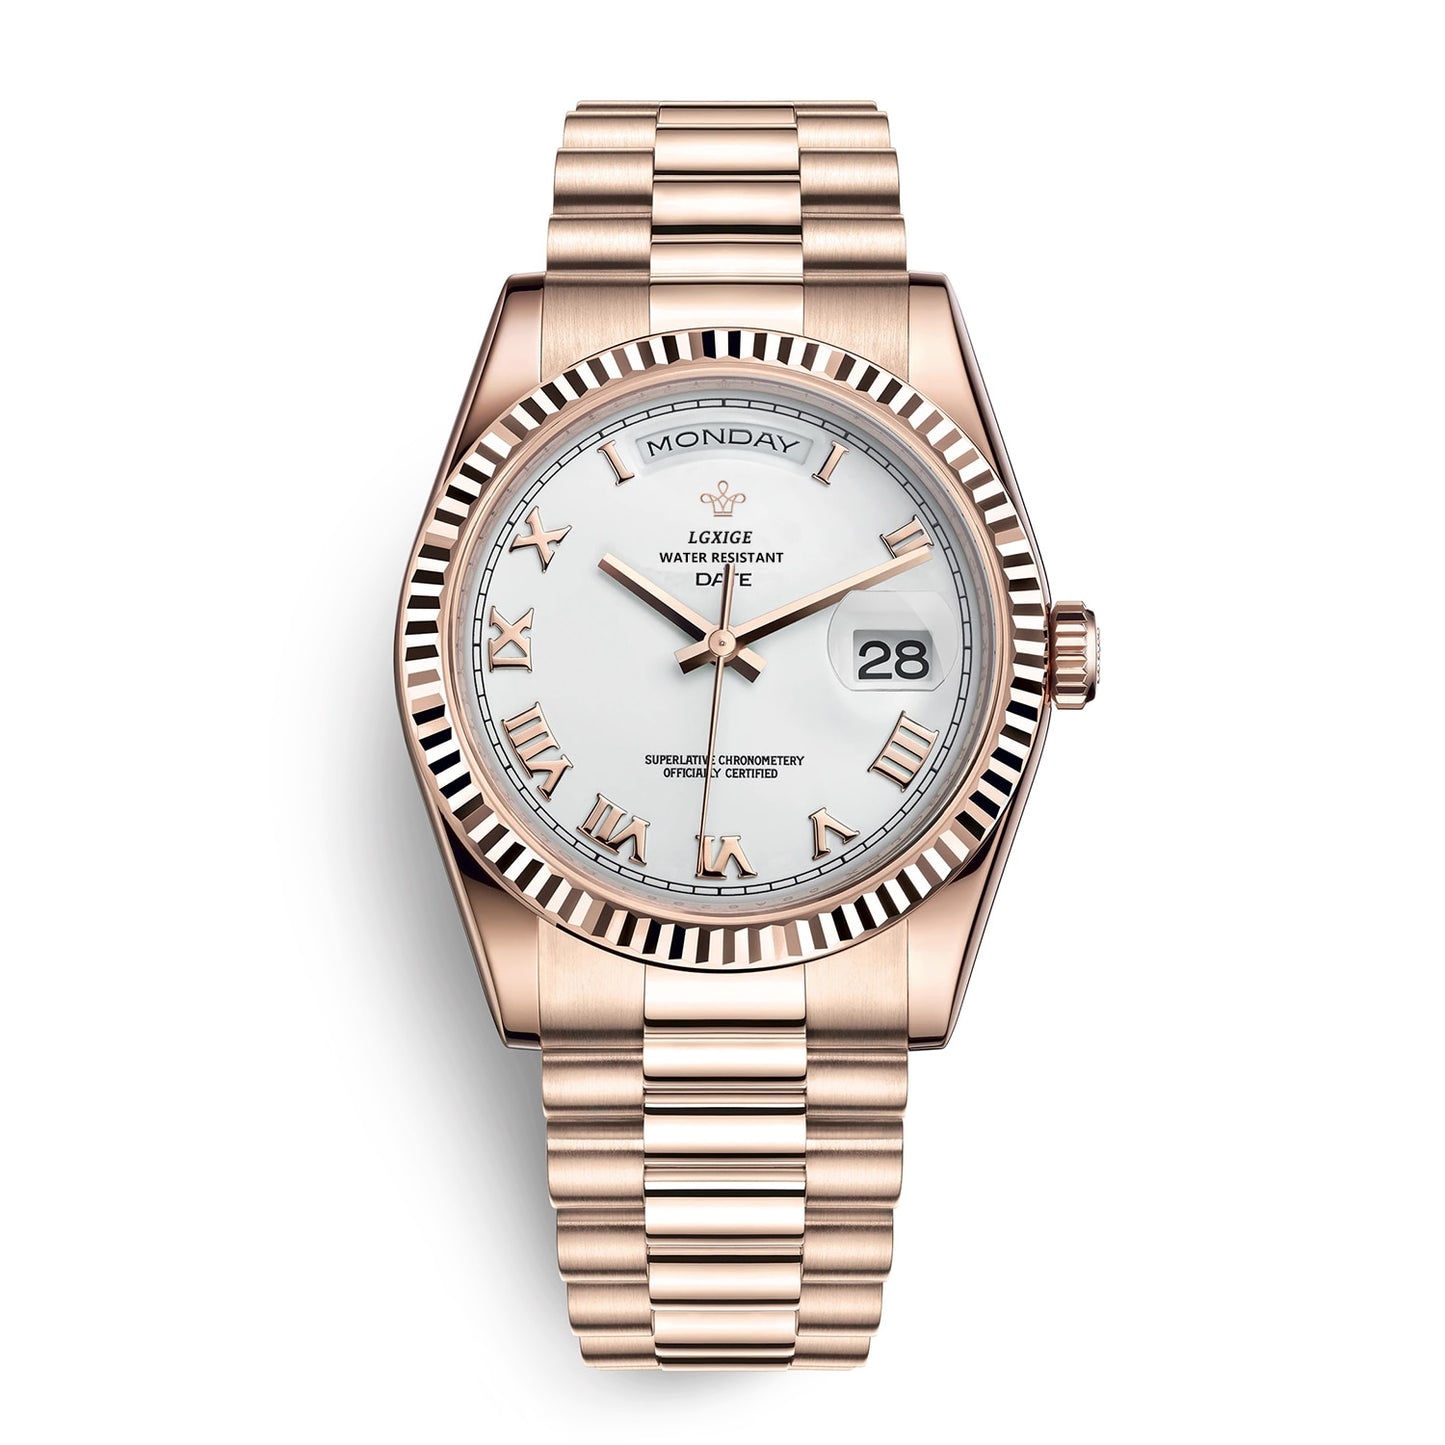 LGXIGE Men&#39;s Watch top brand luxury wrist watch men fashion swim waterproof steel watch day-date quartz clock dropshipping 2021 - KMTELL